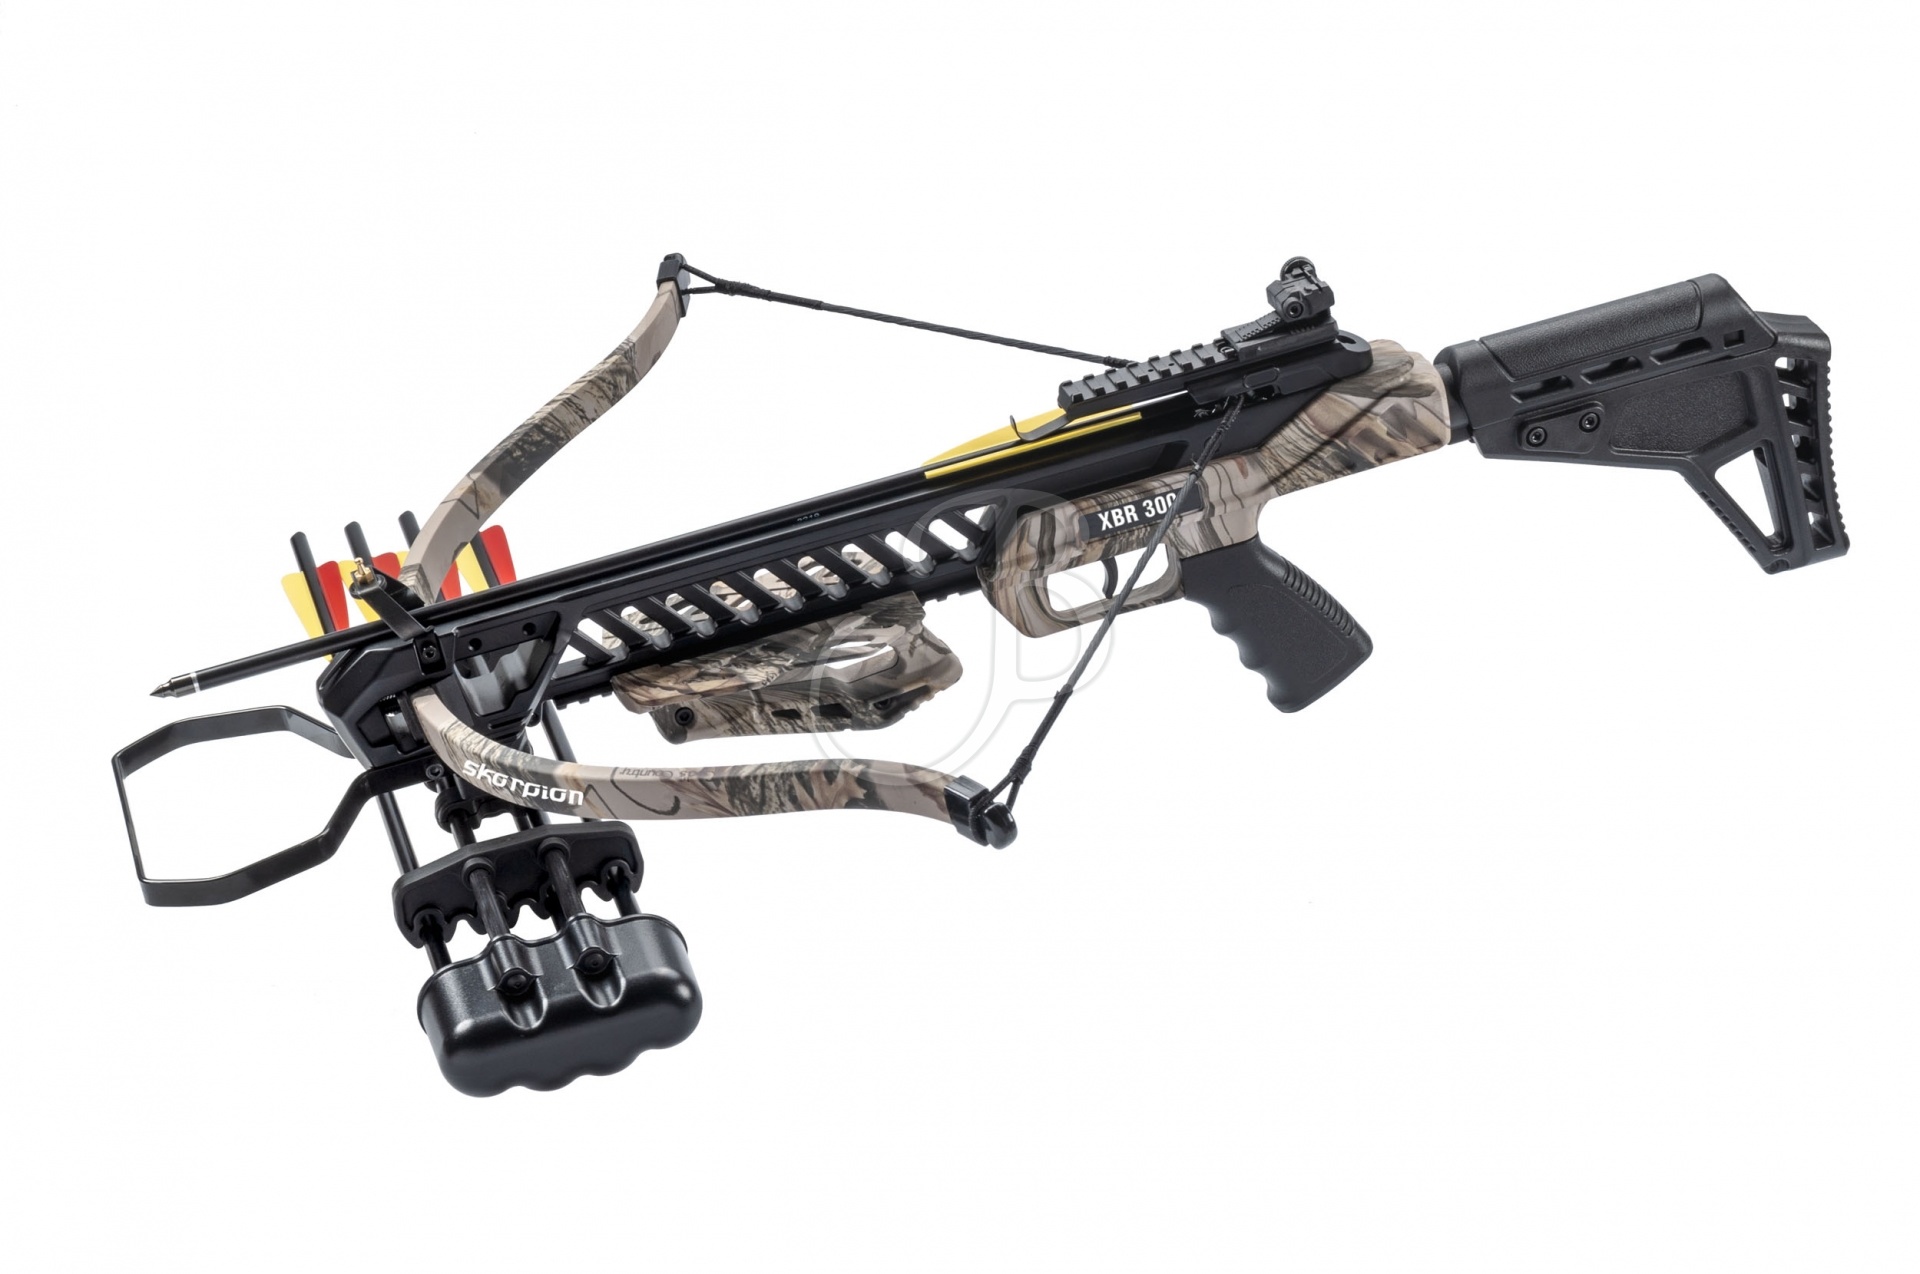 Skorpion Pistolenarmbrust XBR 300 Set - Camo